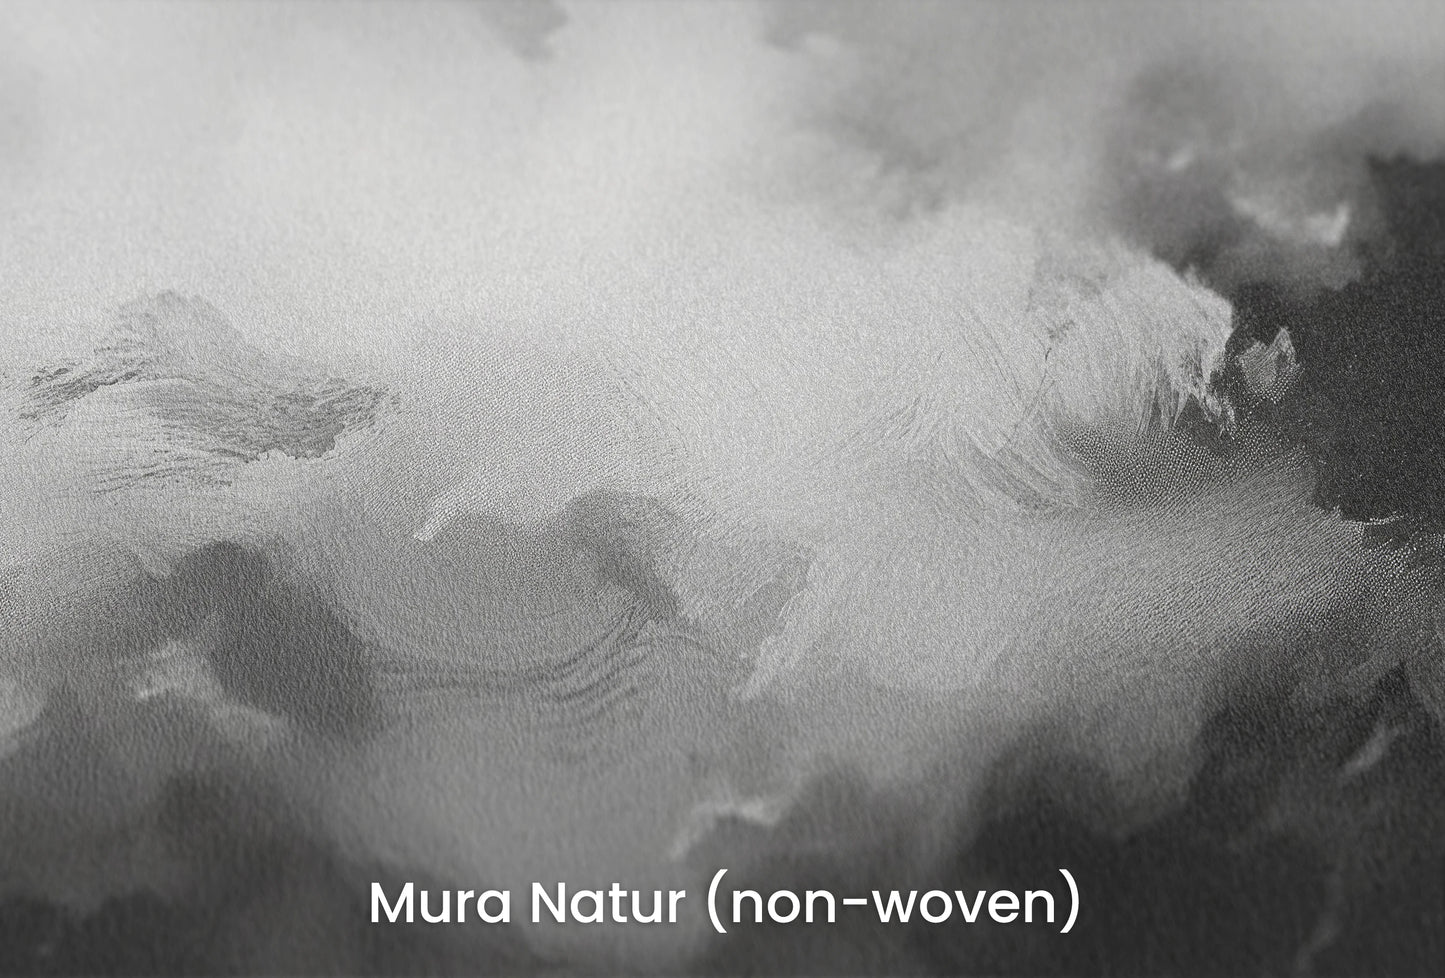 Zbliżenie na artystyczną fototapetę o nazwie Storm's Palette na podłożu Mura Natur (non-woven) - naturalne i ekologiczne podłoże.